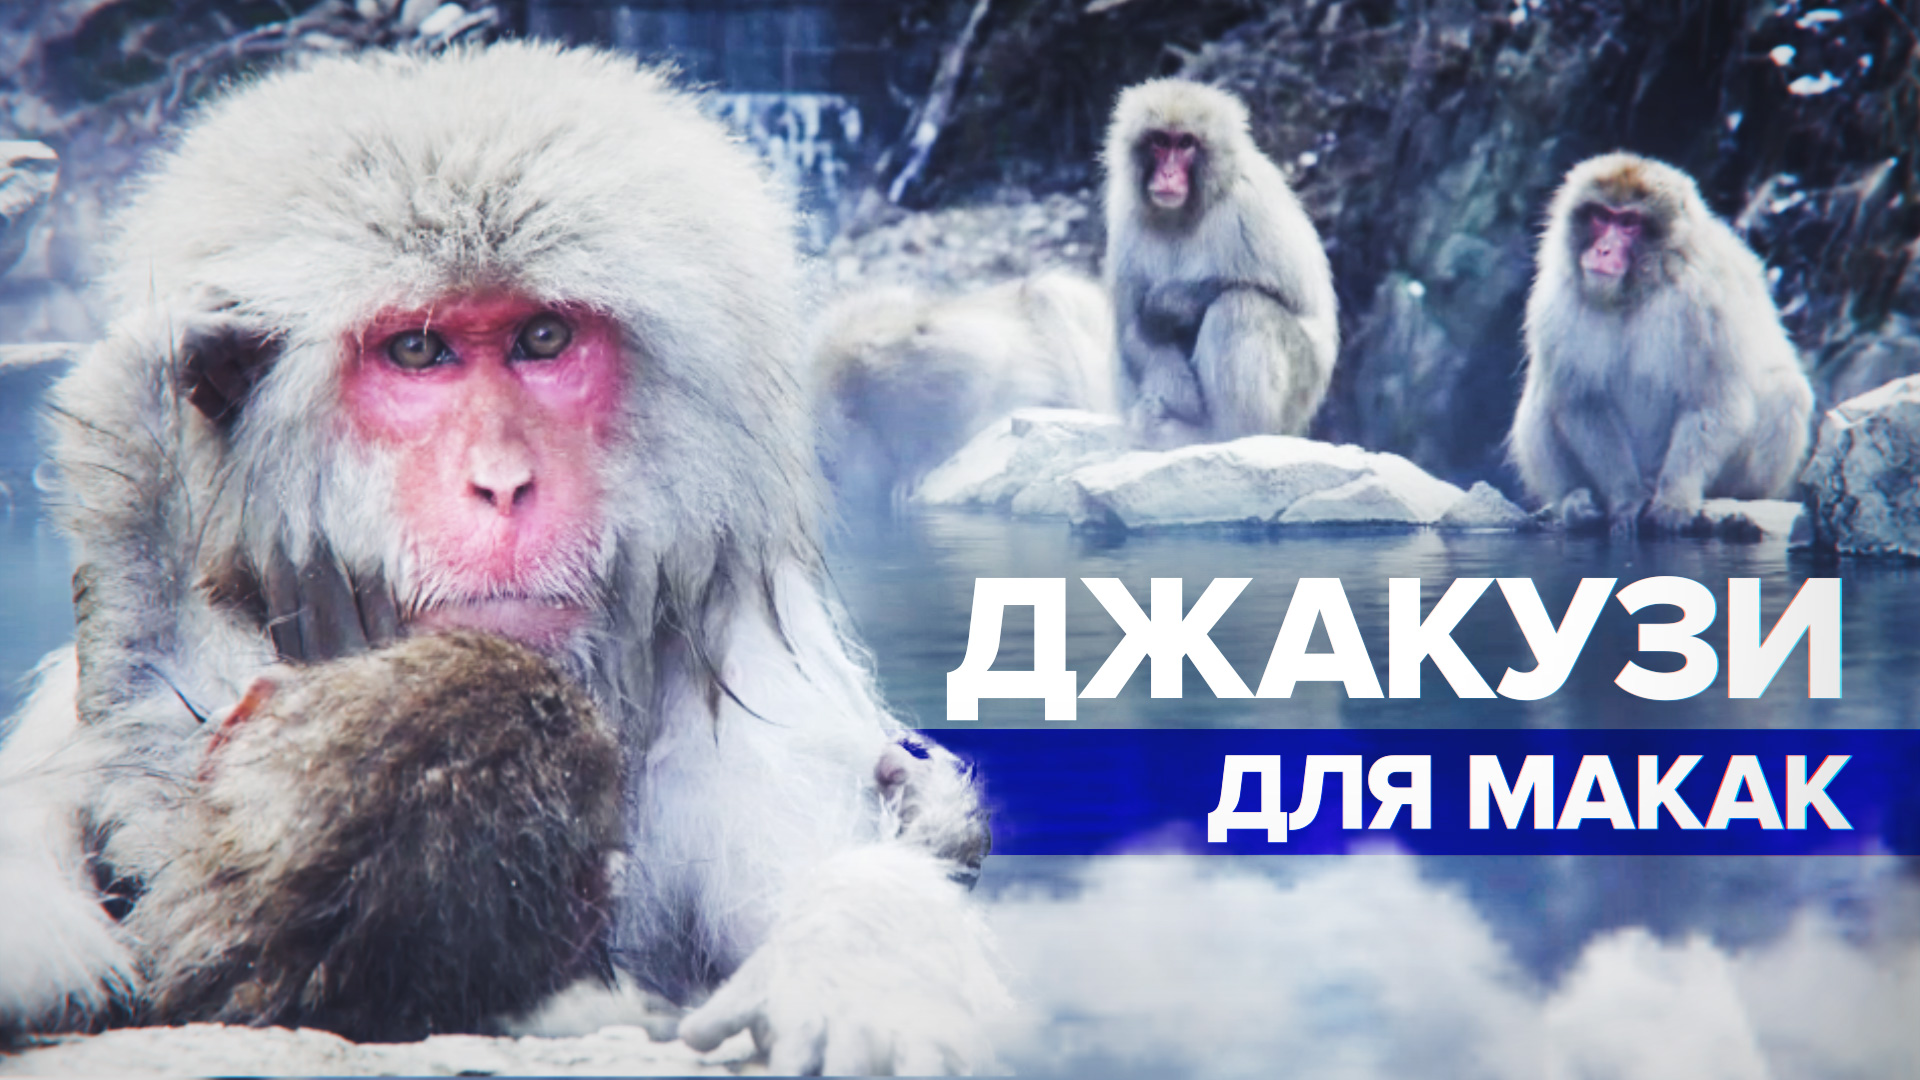 Природный курорт: в Японии снежные обезьяны греются в горячих источниках